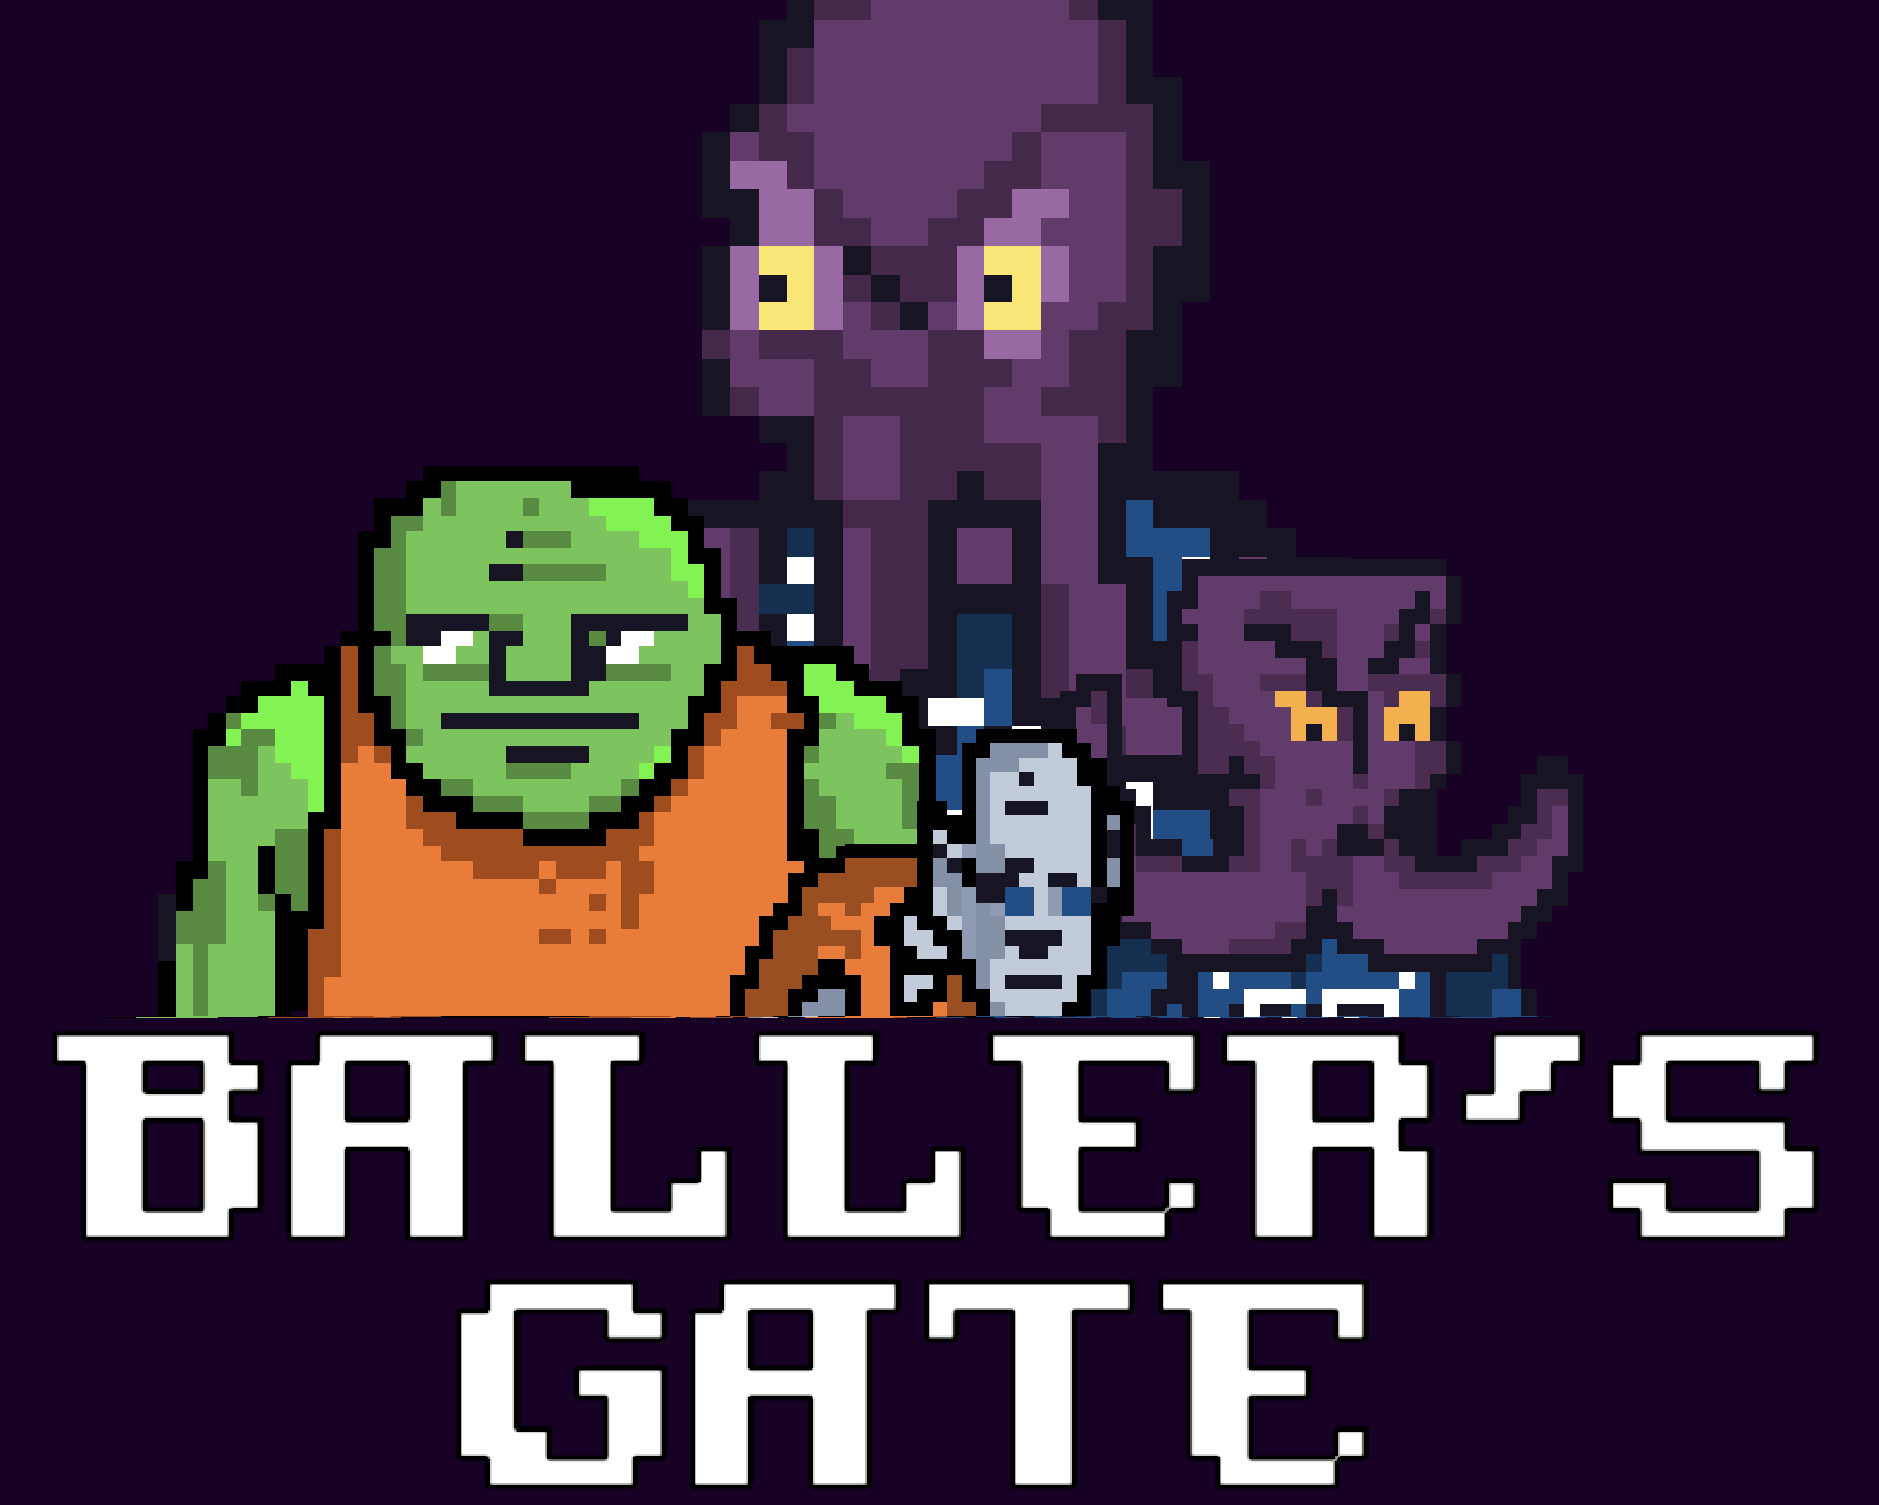 Baller's Gate